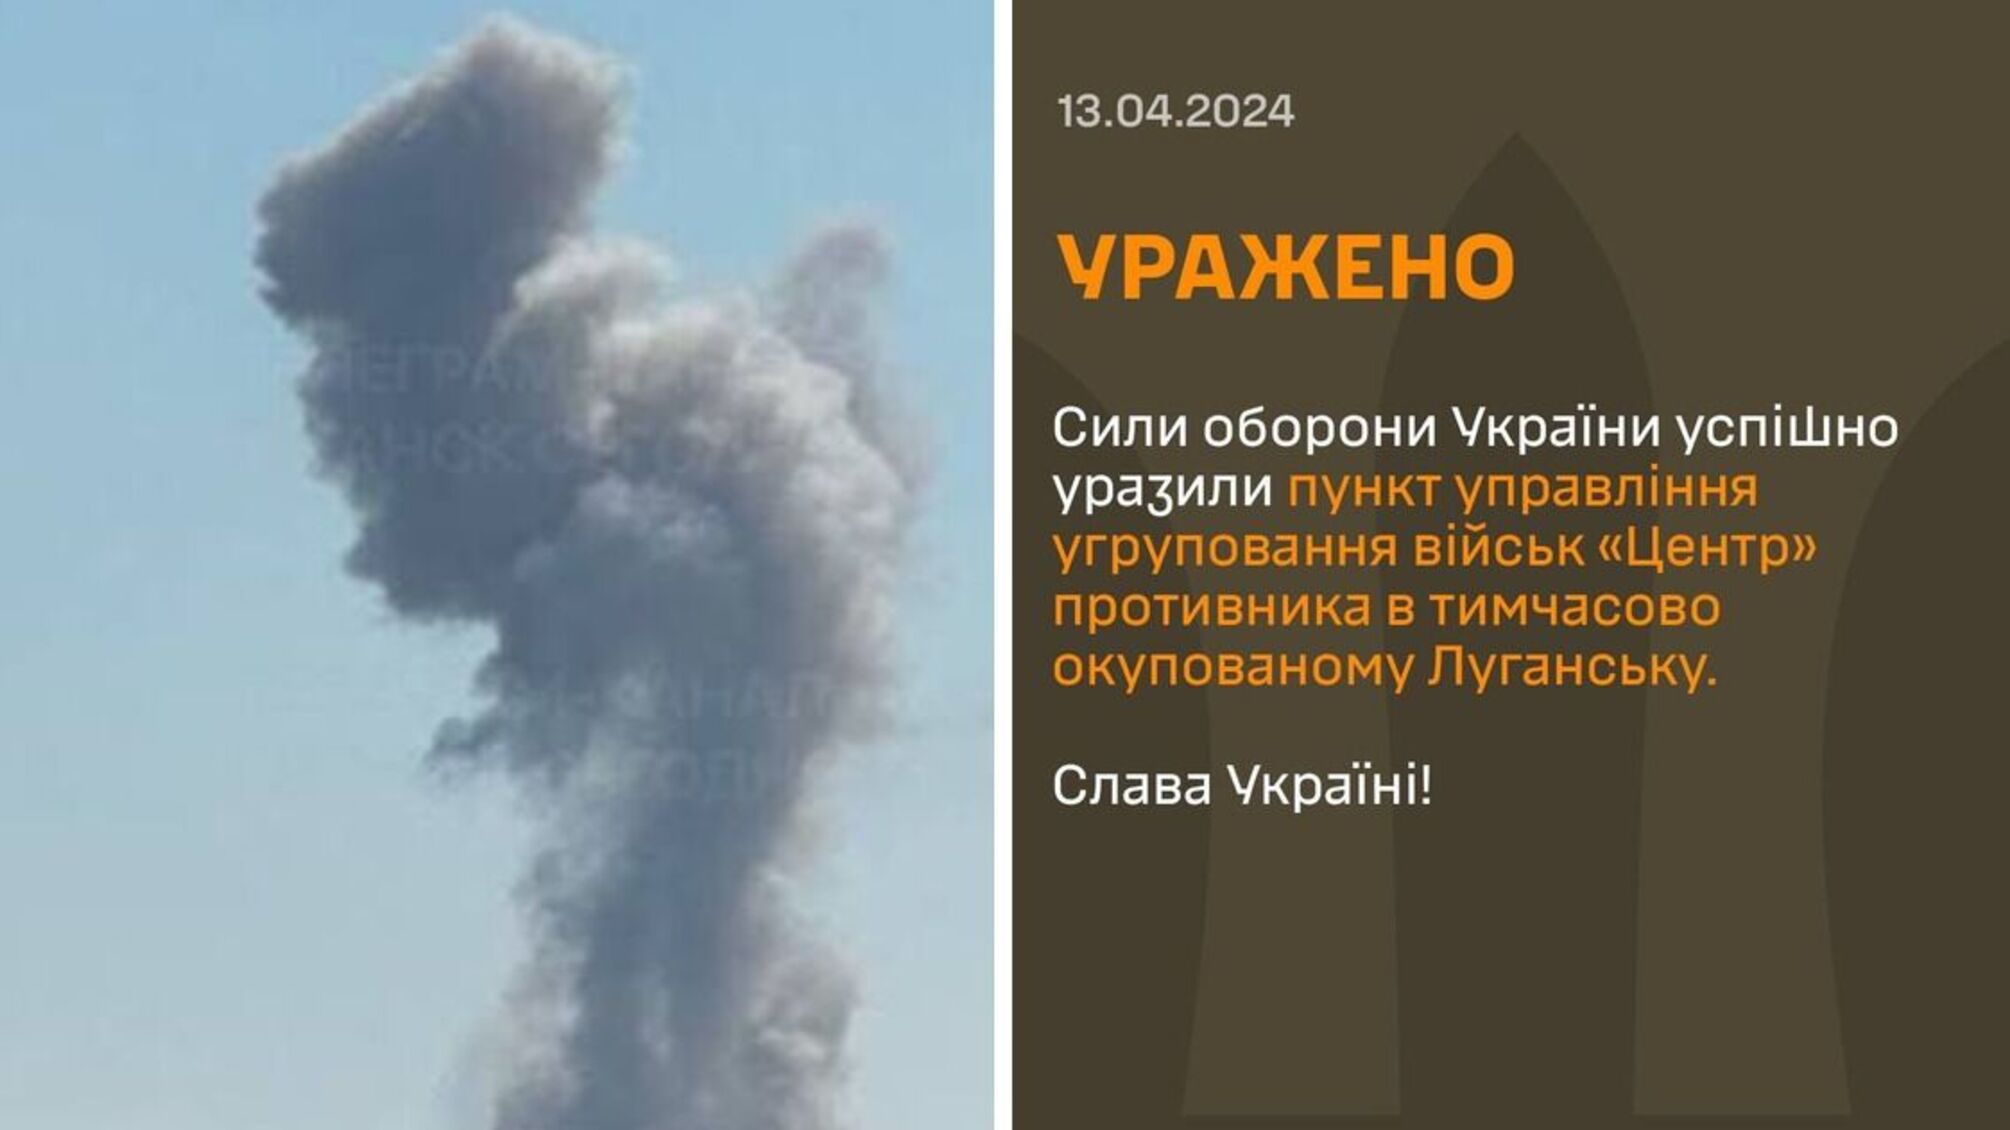 Мощные взрывы прогремели во временно оккупированном Луганске прогремели 13 апреля